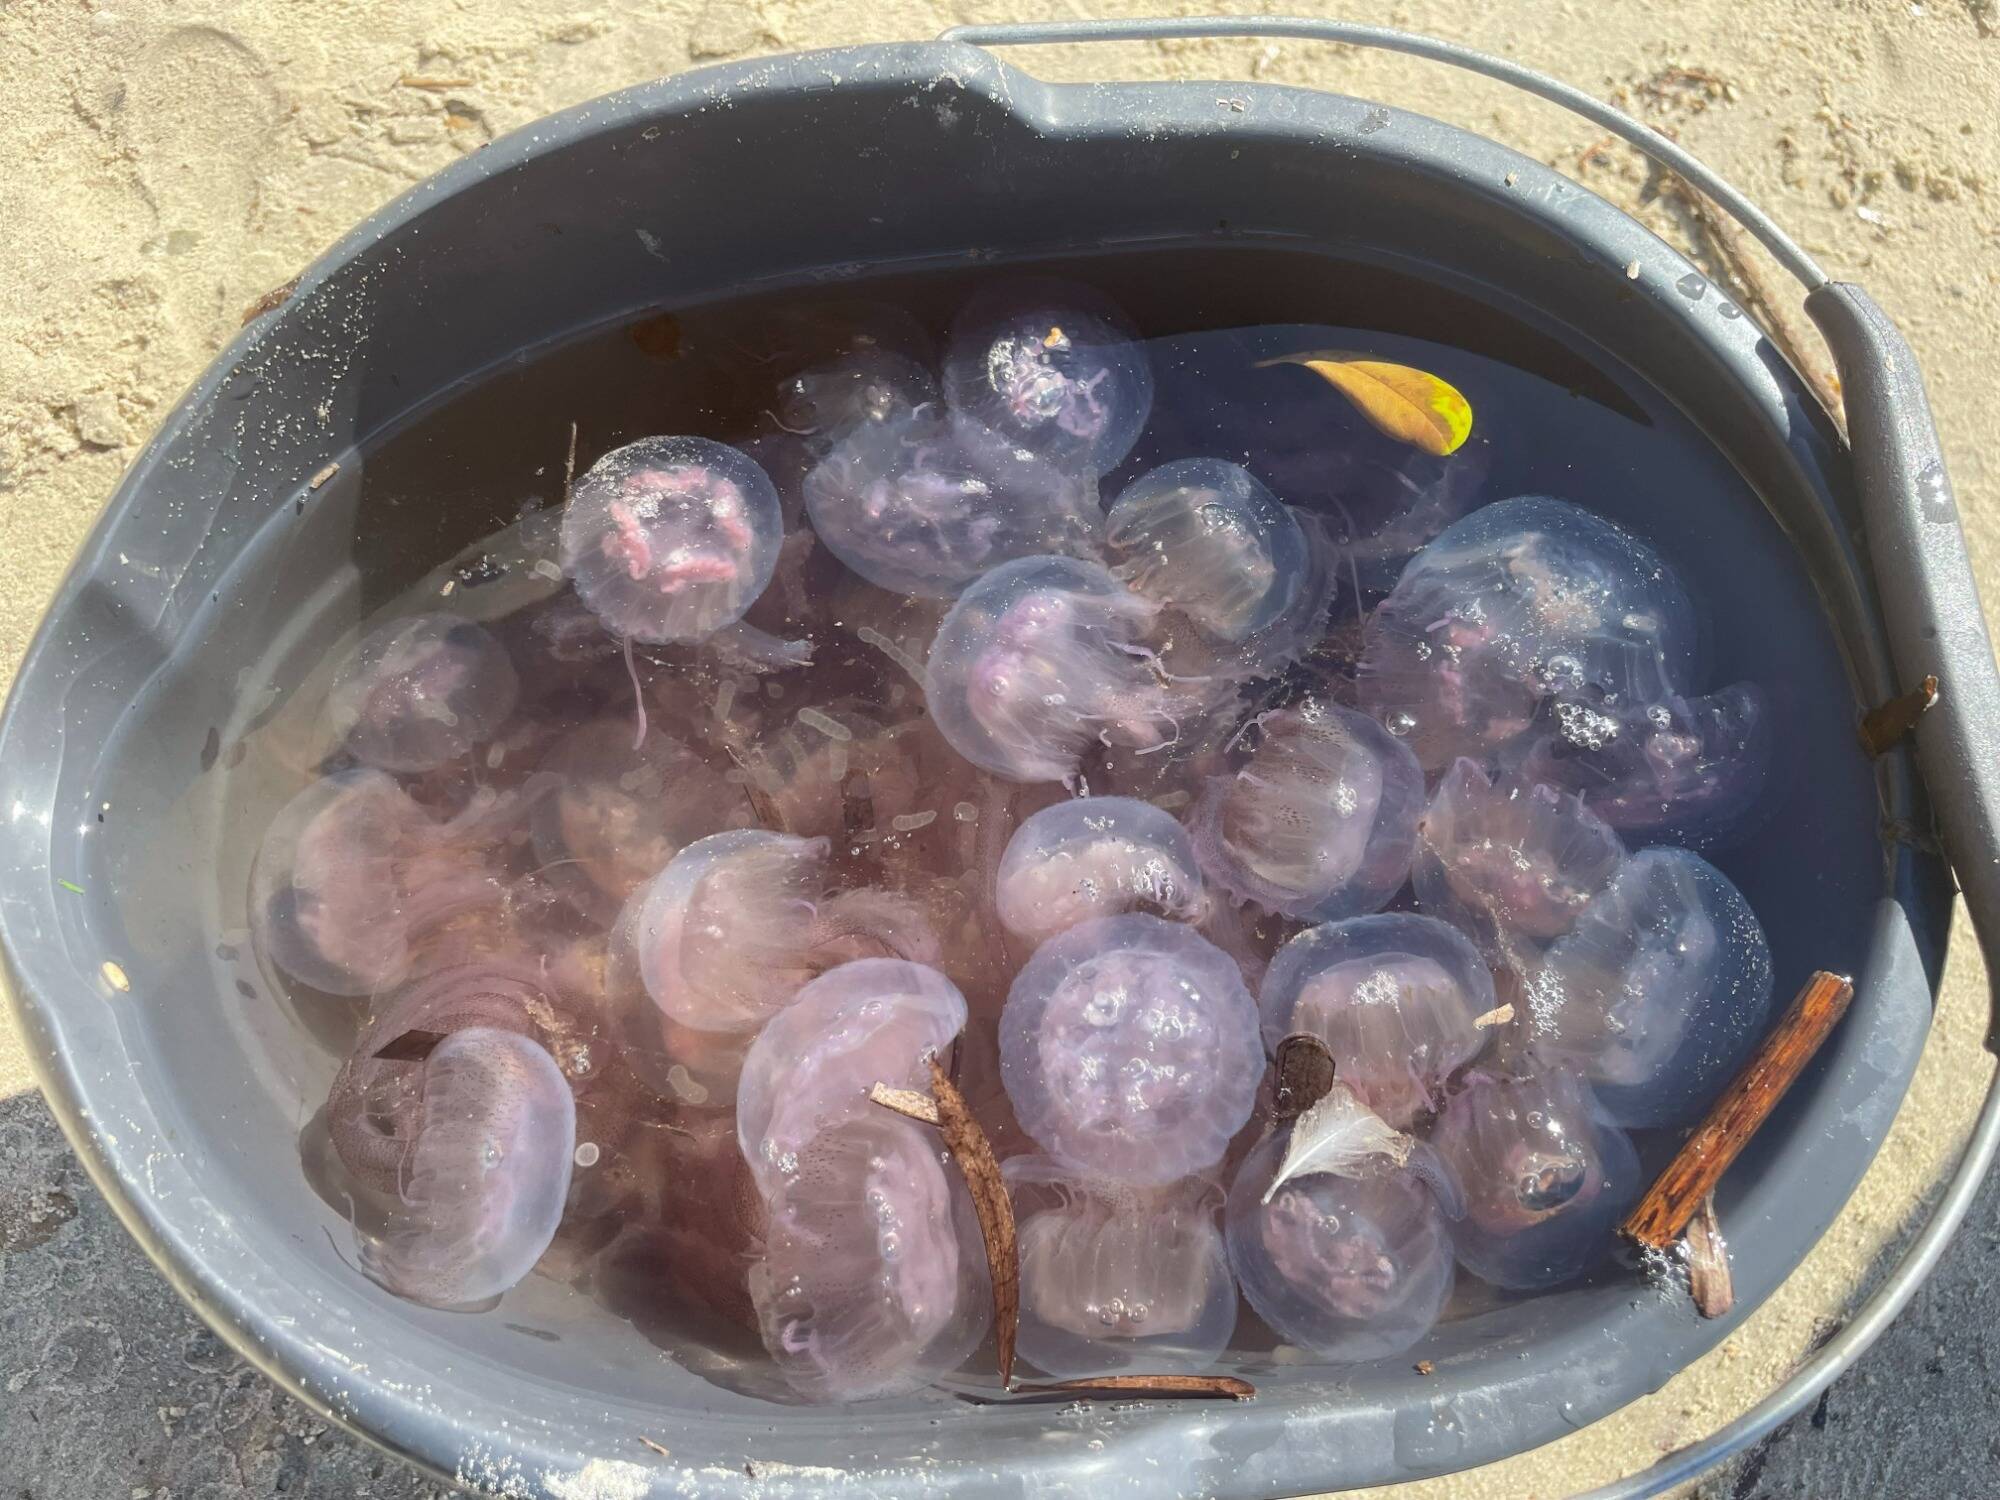 Pourquoi les filets anti-méduse sont-ils si peu utilisés sur les plages de  la Côte d'Azur? - Var-Matin